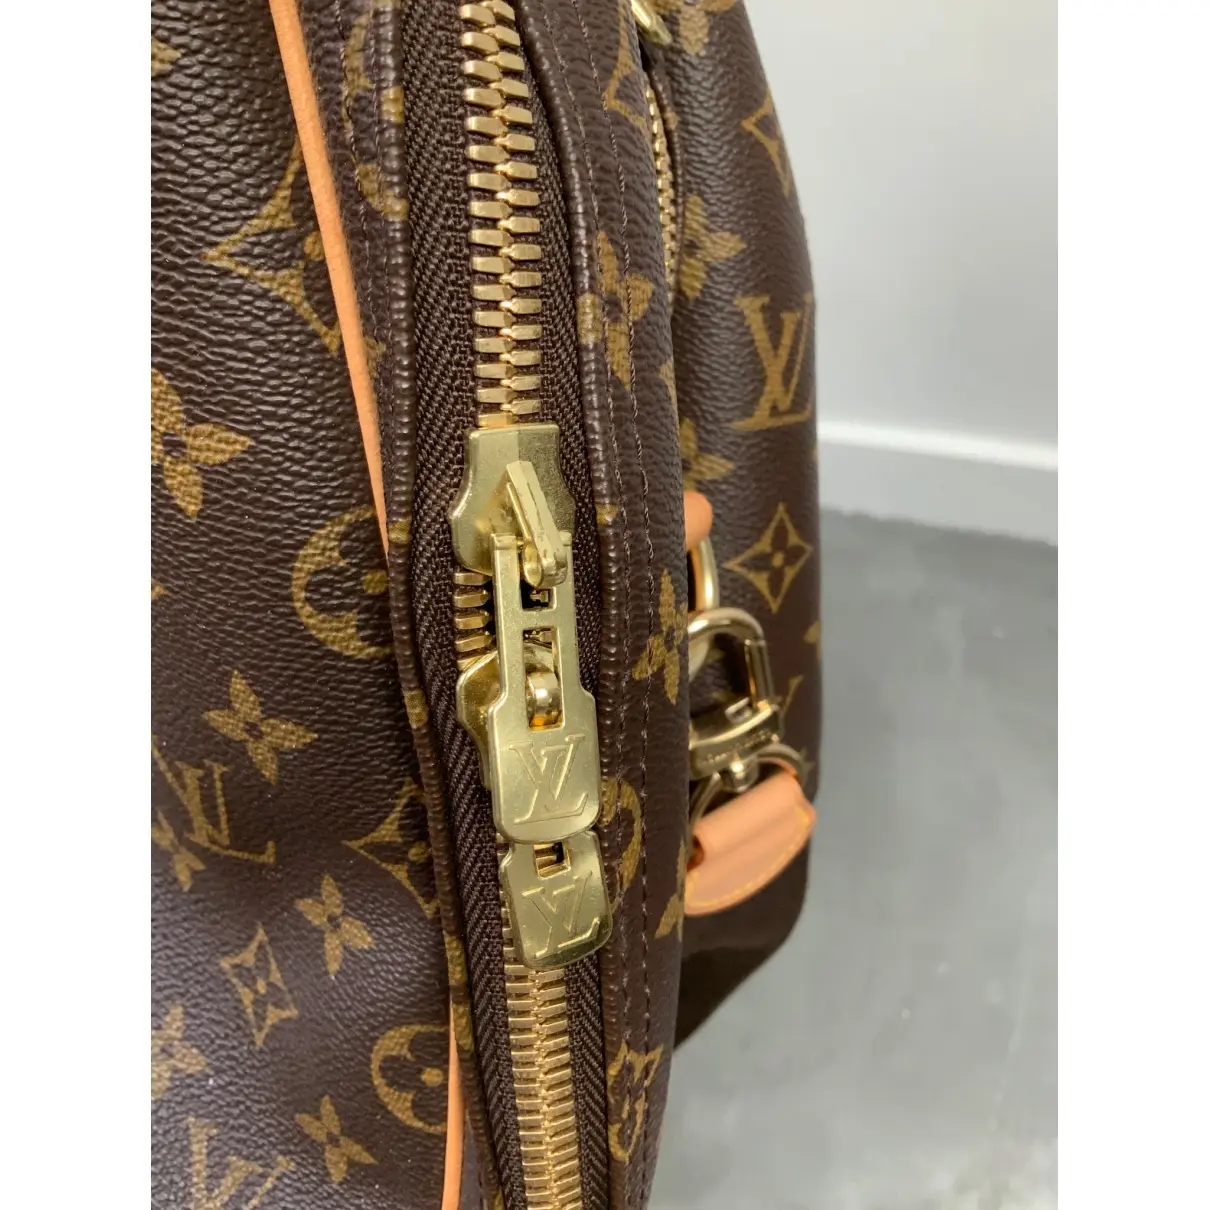 Buy Louis Vuitton Alizé cloth 48h bag online